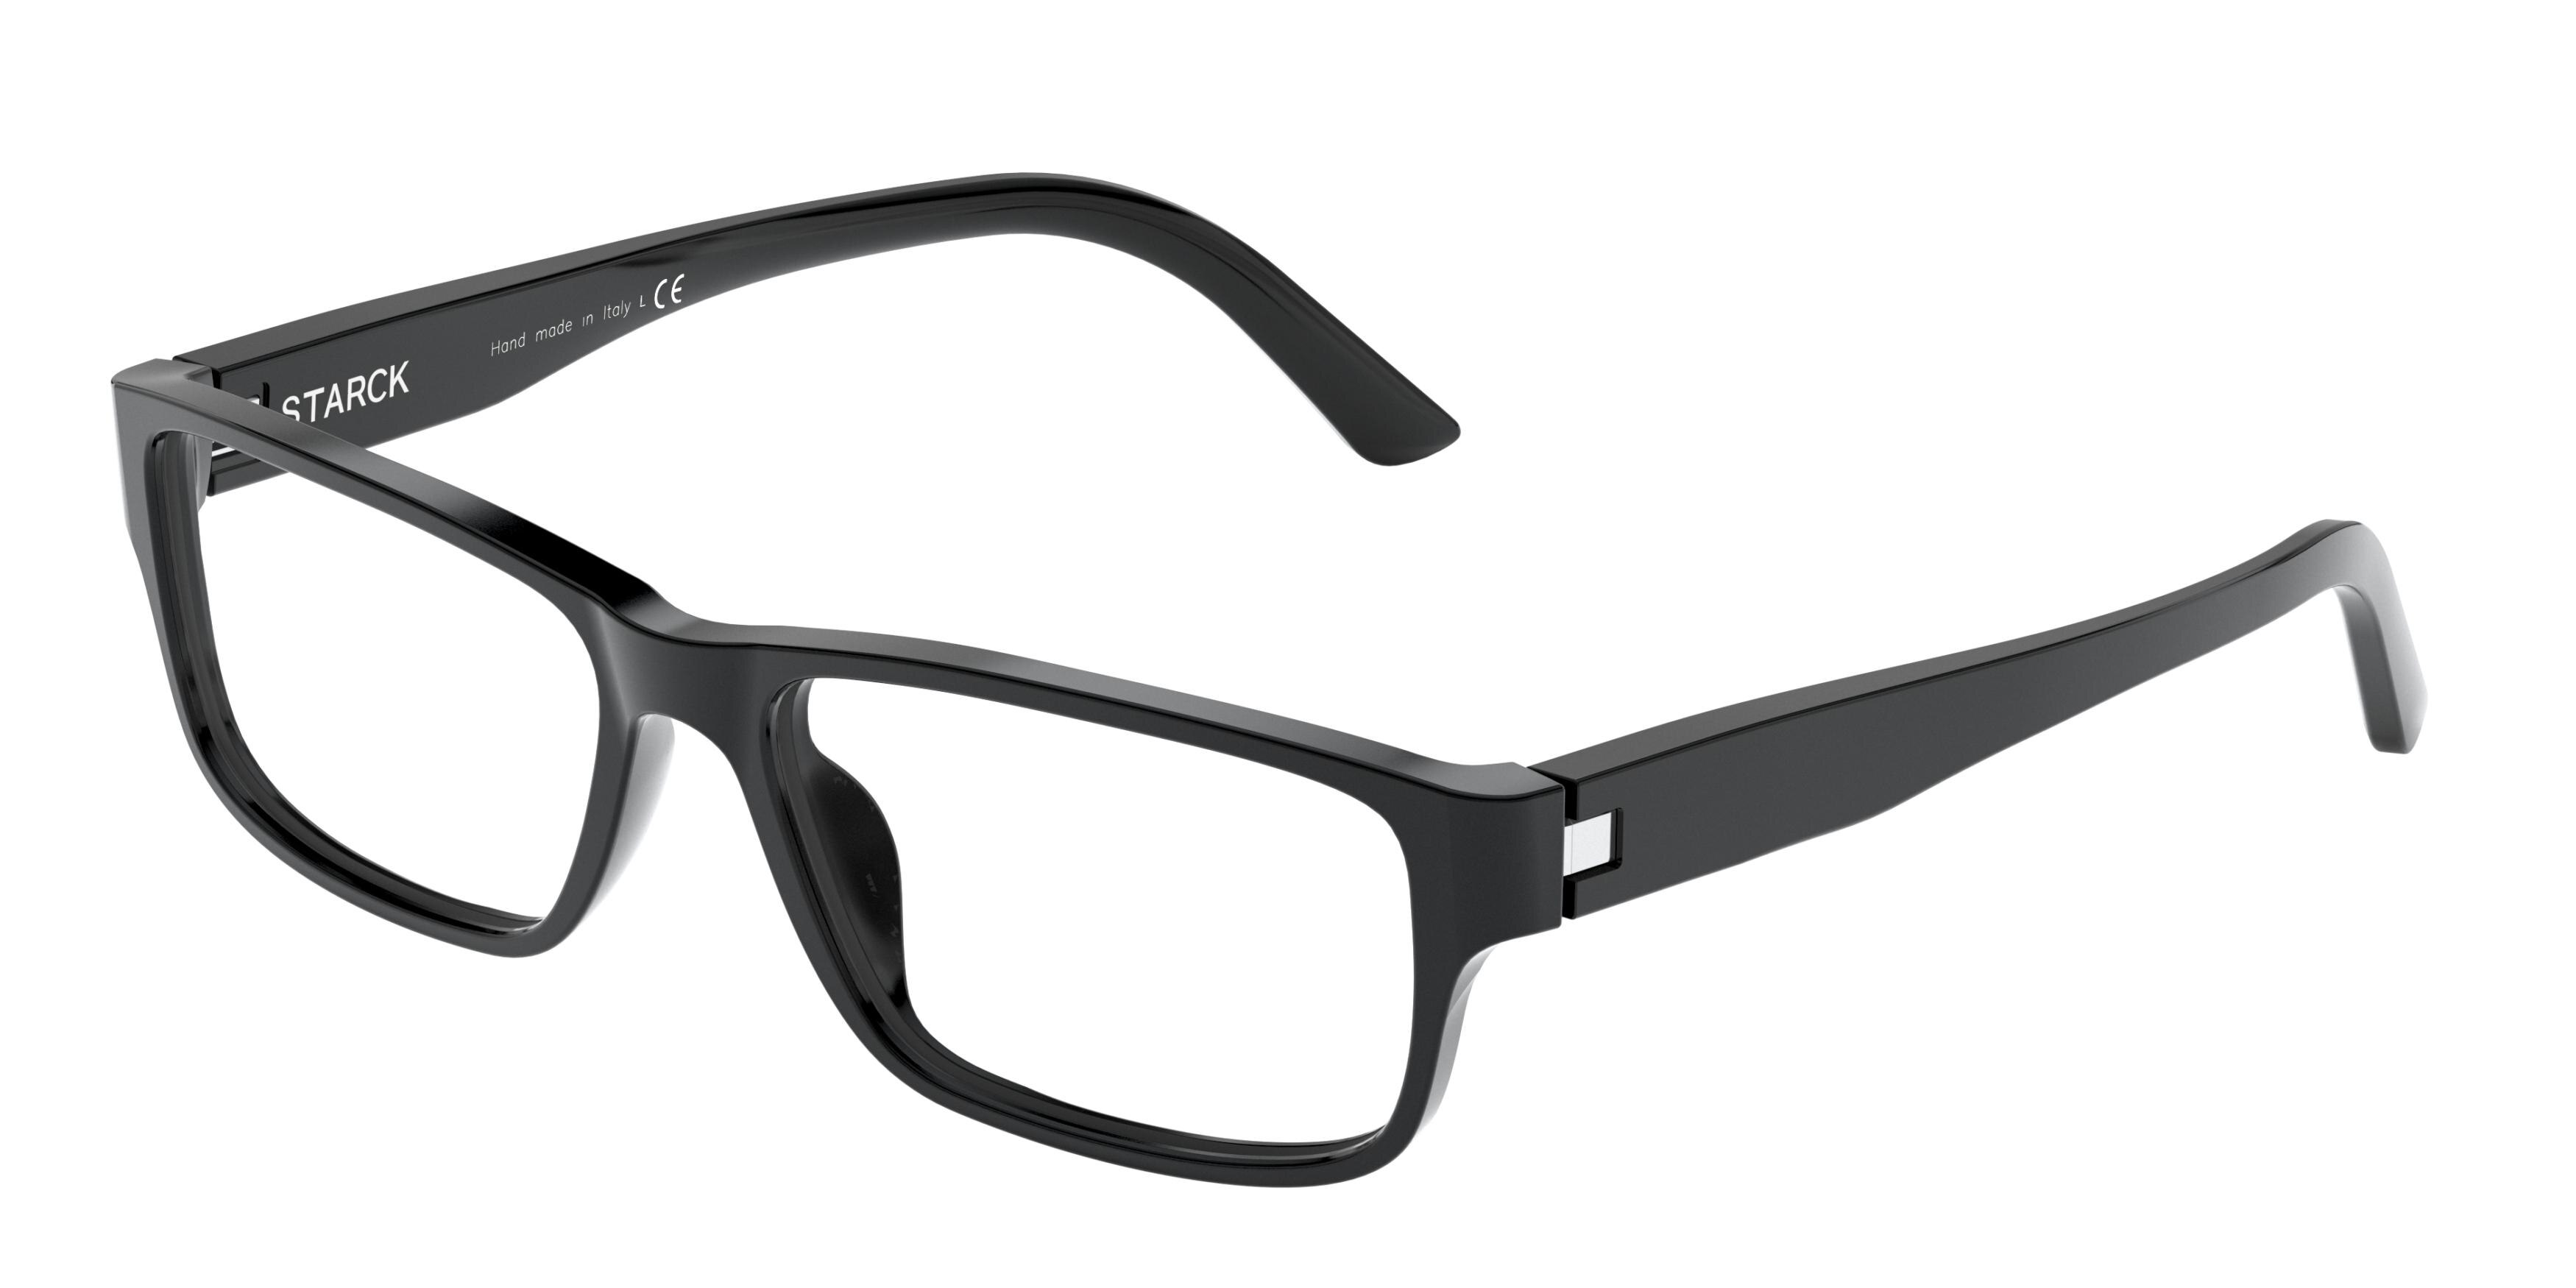 Starck Glasses Frames | vlr.eng.br